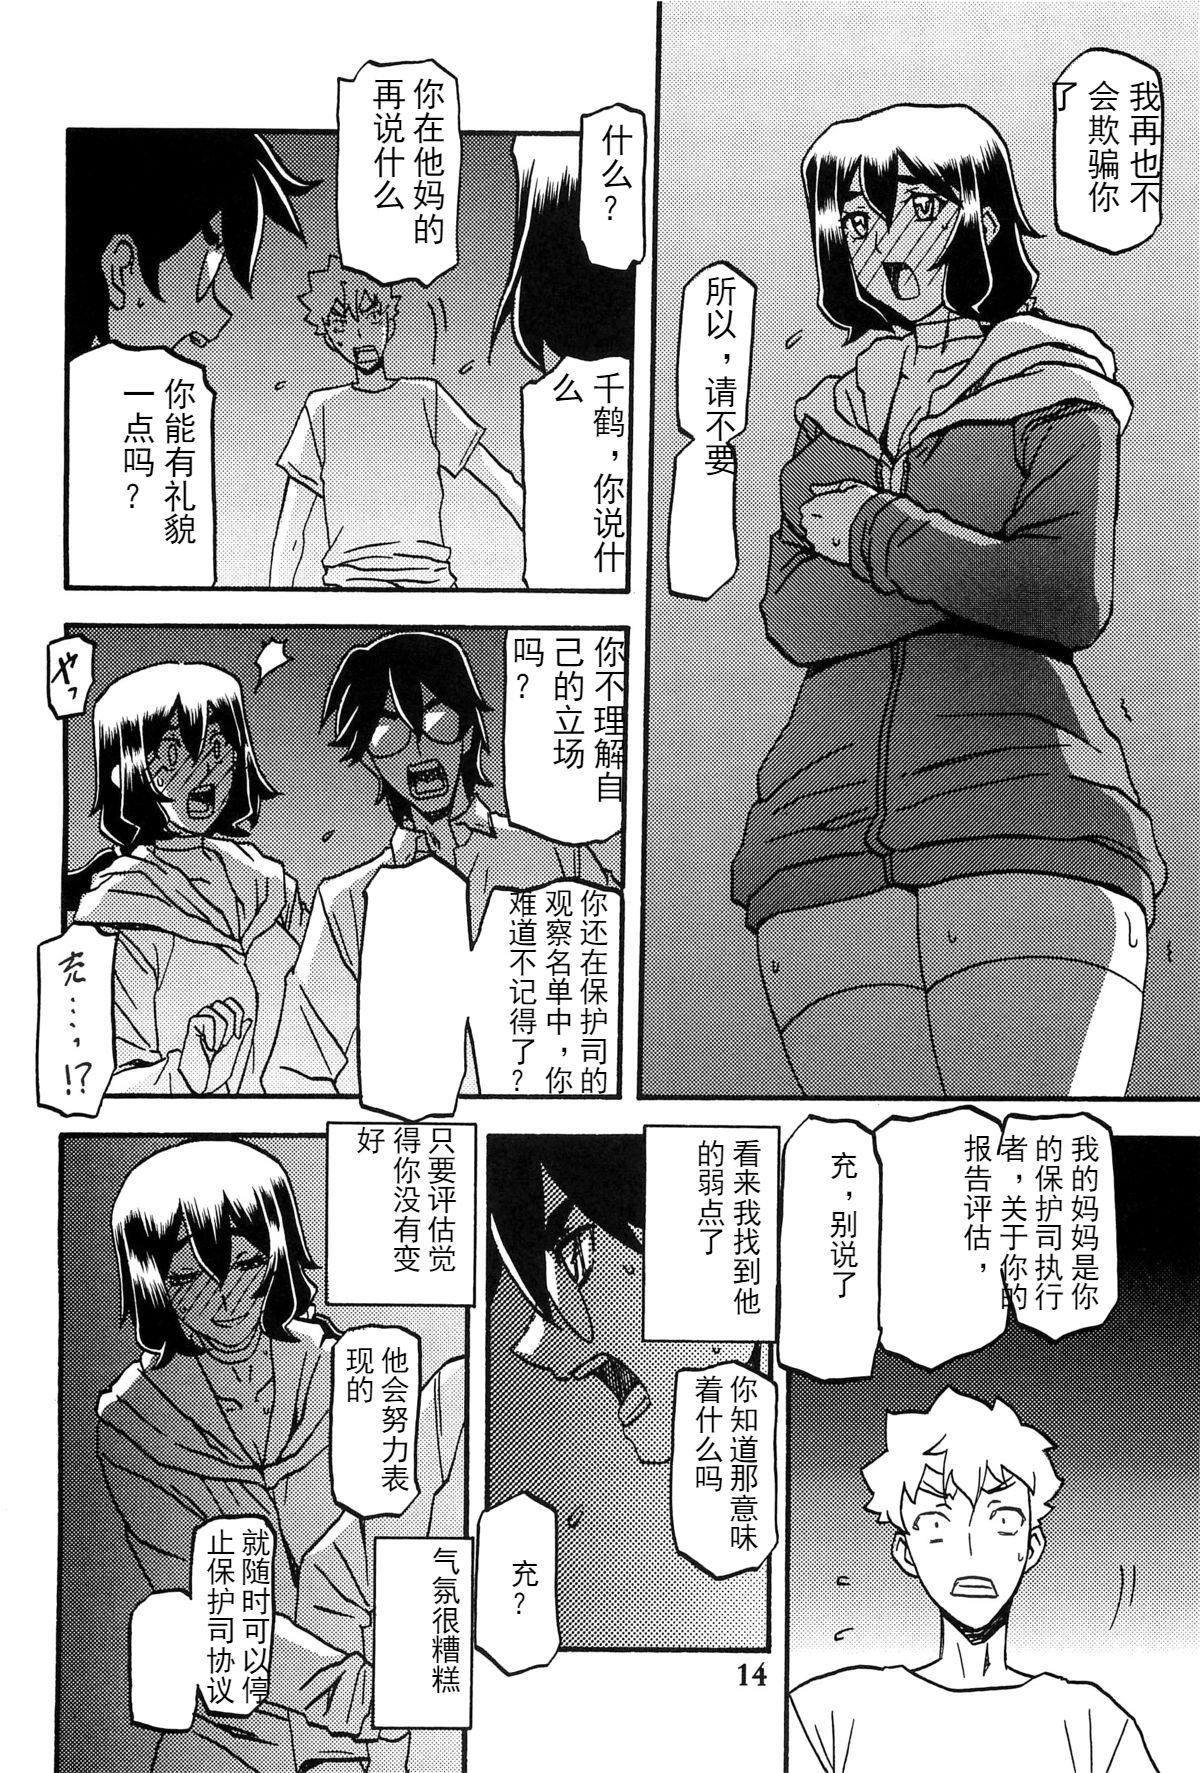 Amatur Porn Akebi no Mi - Chizuru AFTER - Akebi no mi Doggy - Page 13